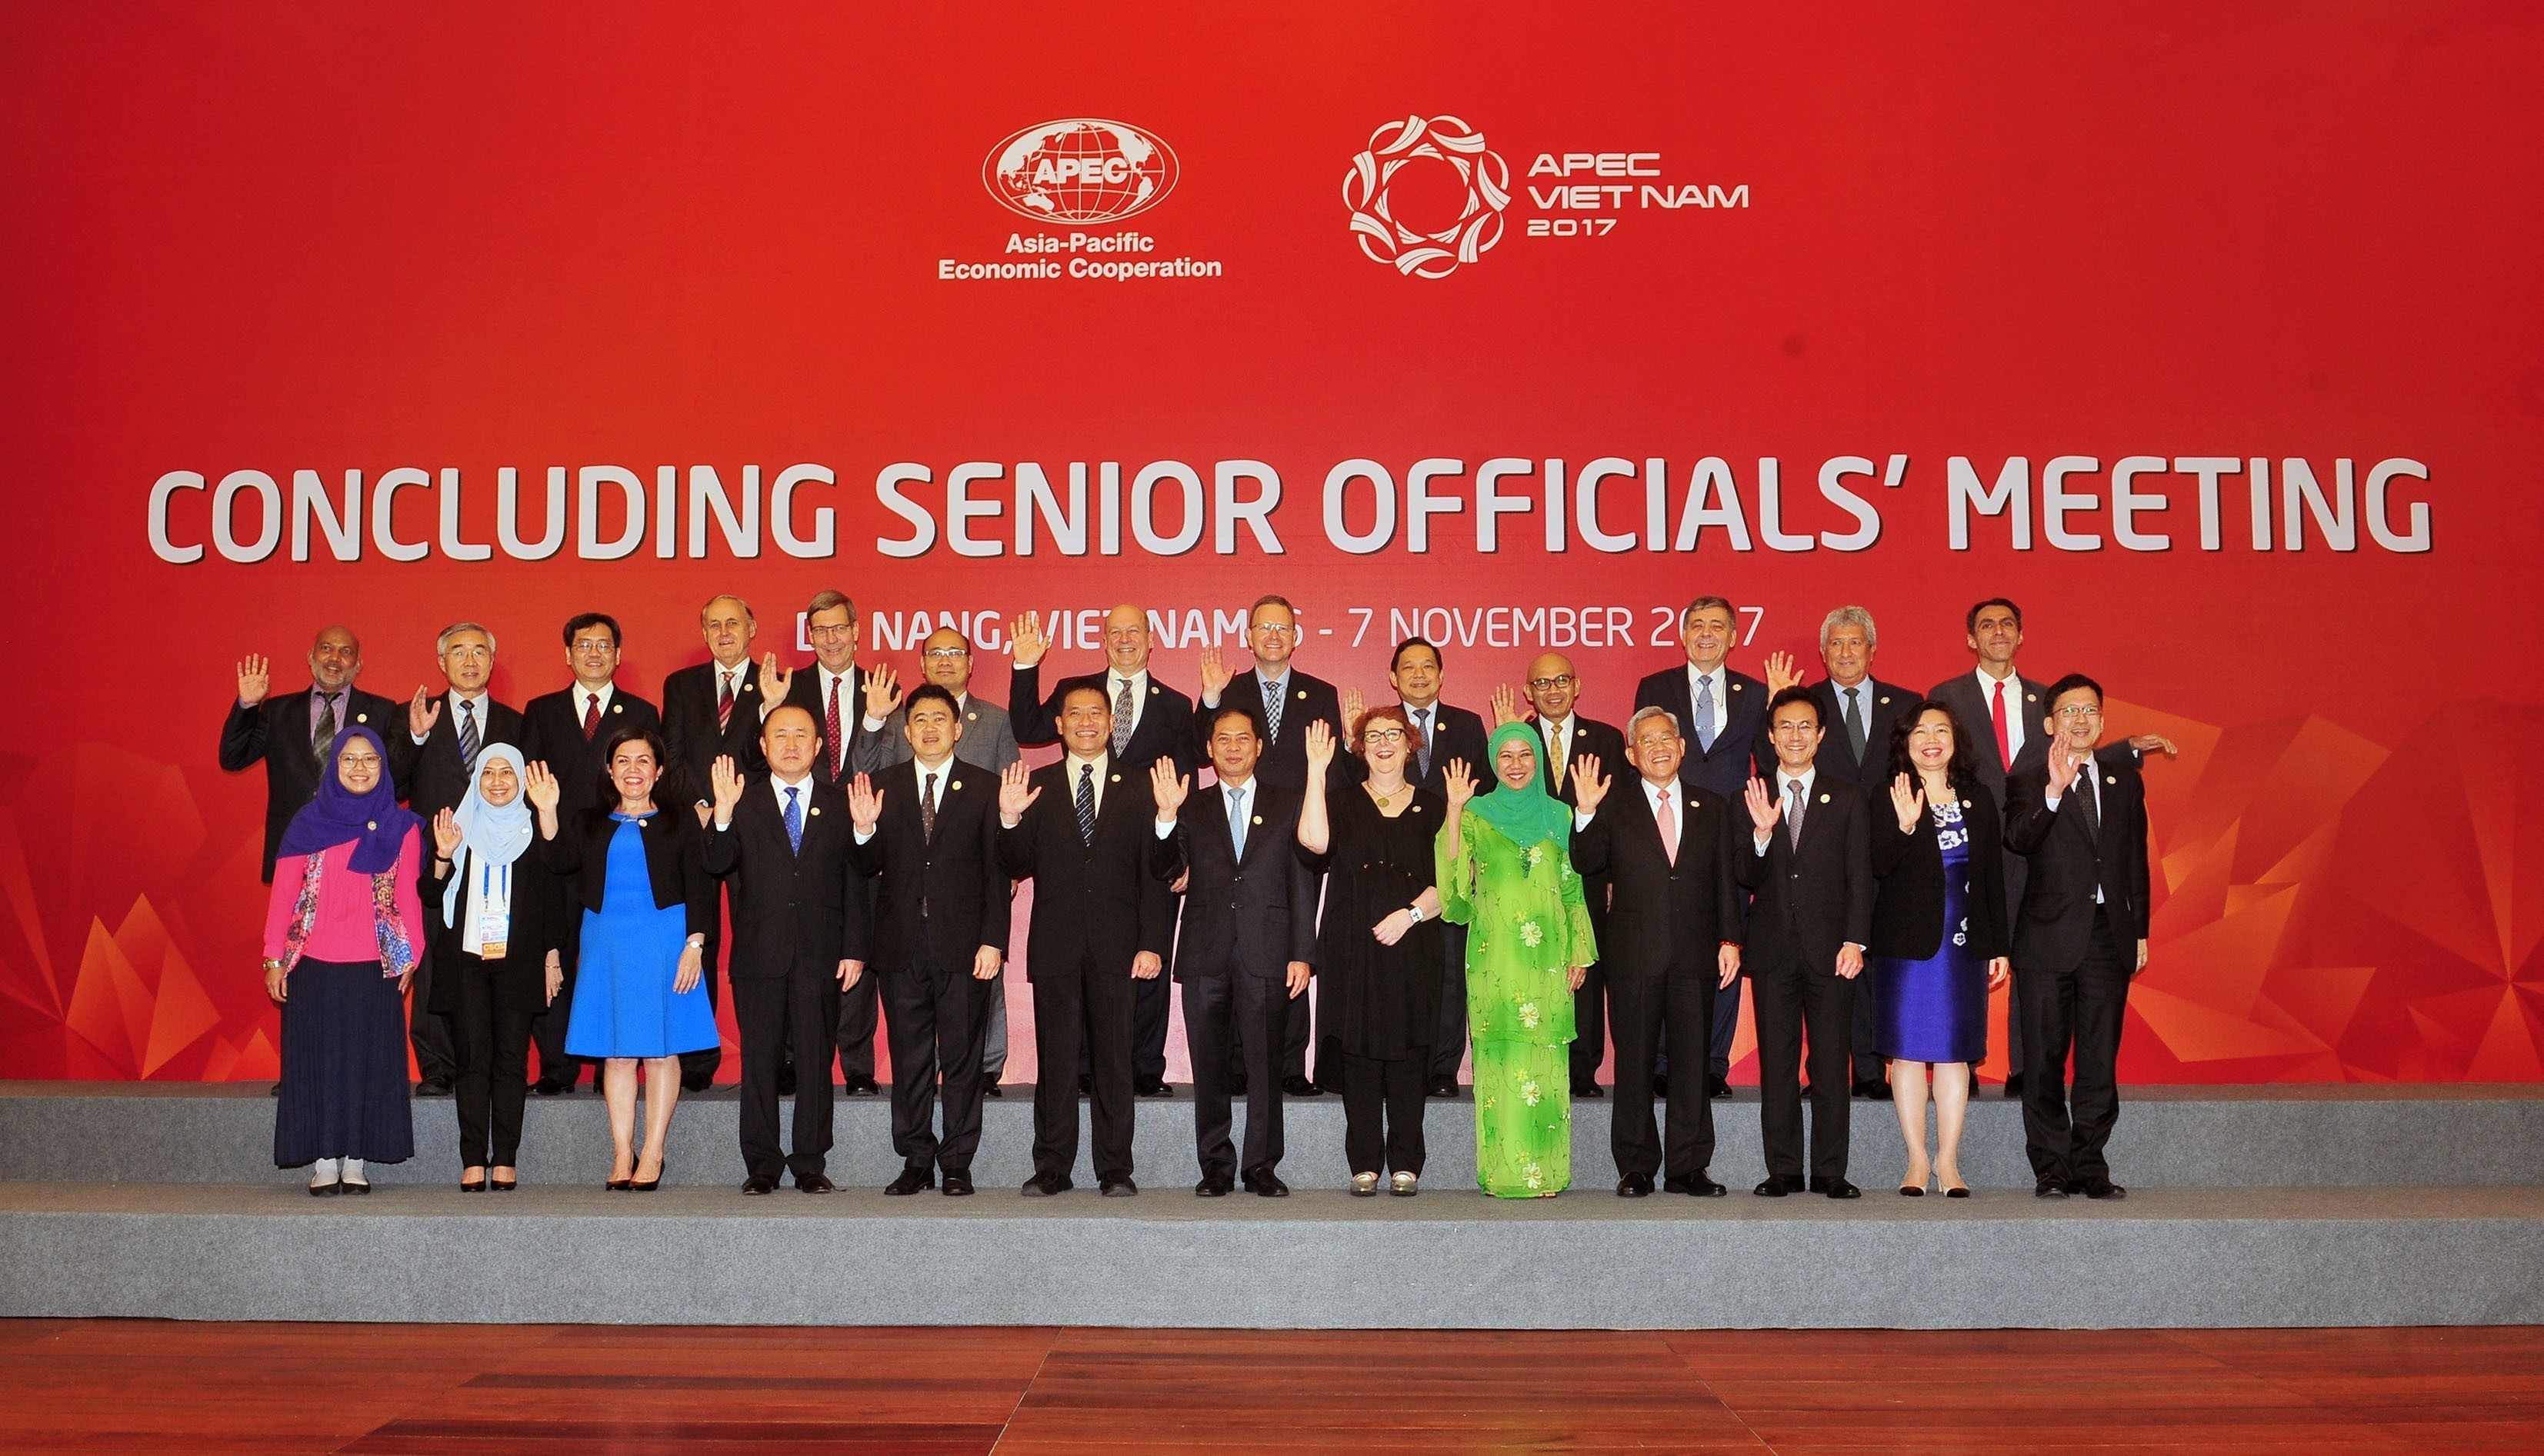 Hội nghị đầu tiên trong Tuần lễ Cấp cao APEC 2017 kết thúc thành công